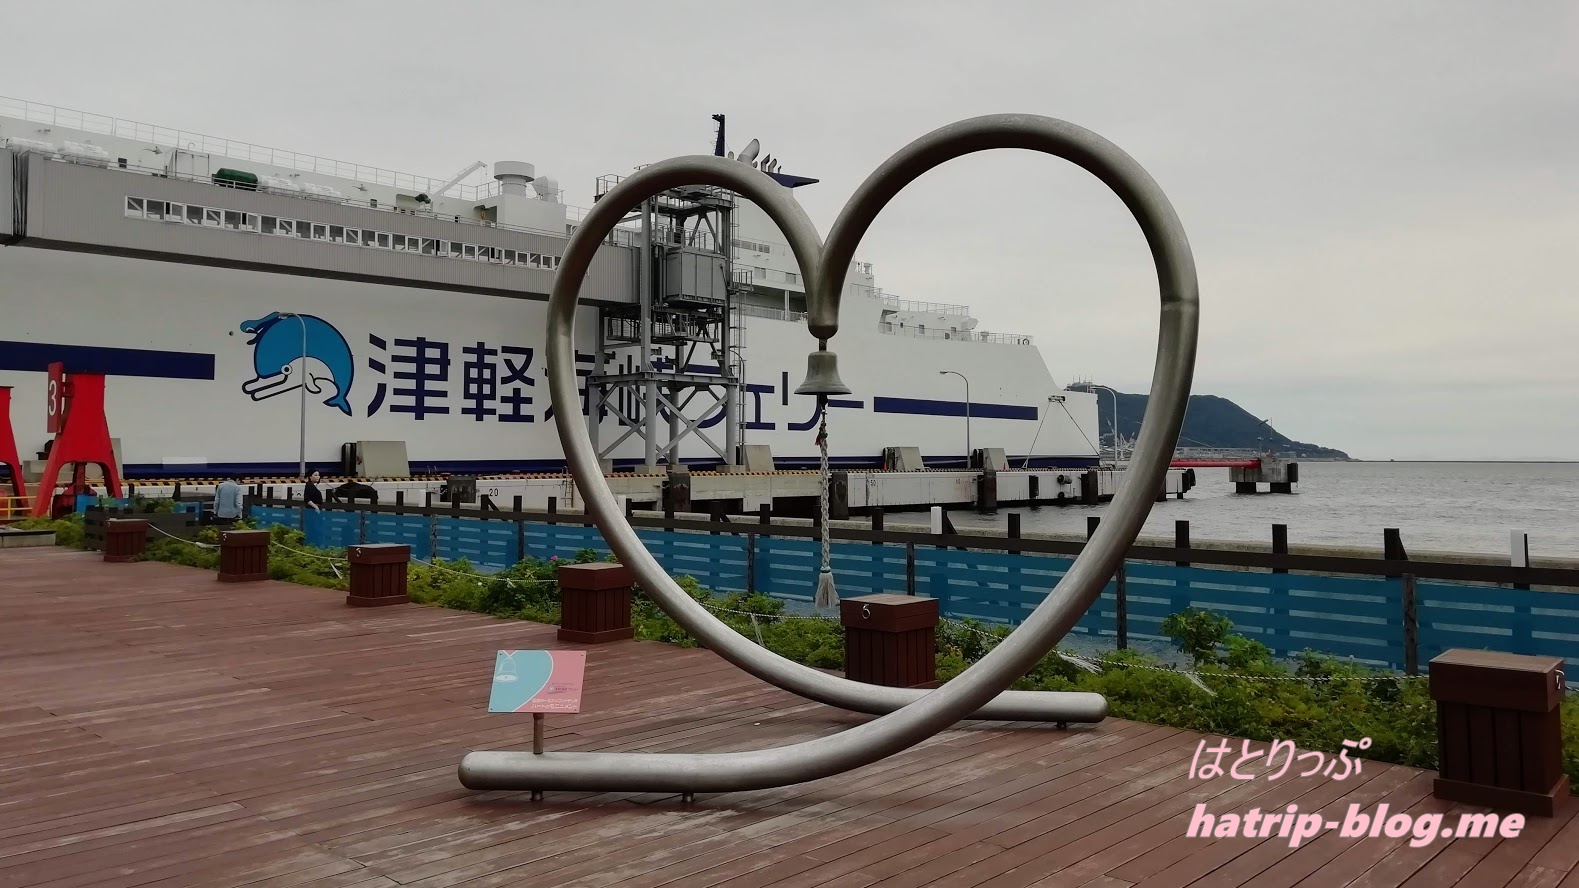 北海道函館市 函館フェリーターミナル ハートのモニュメント